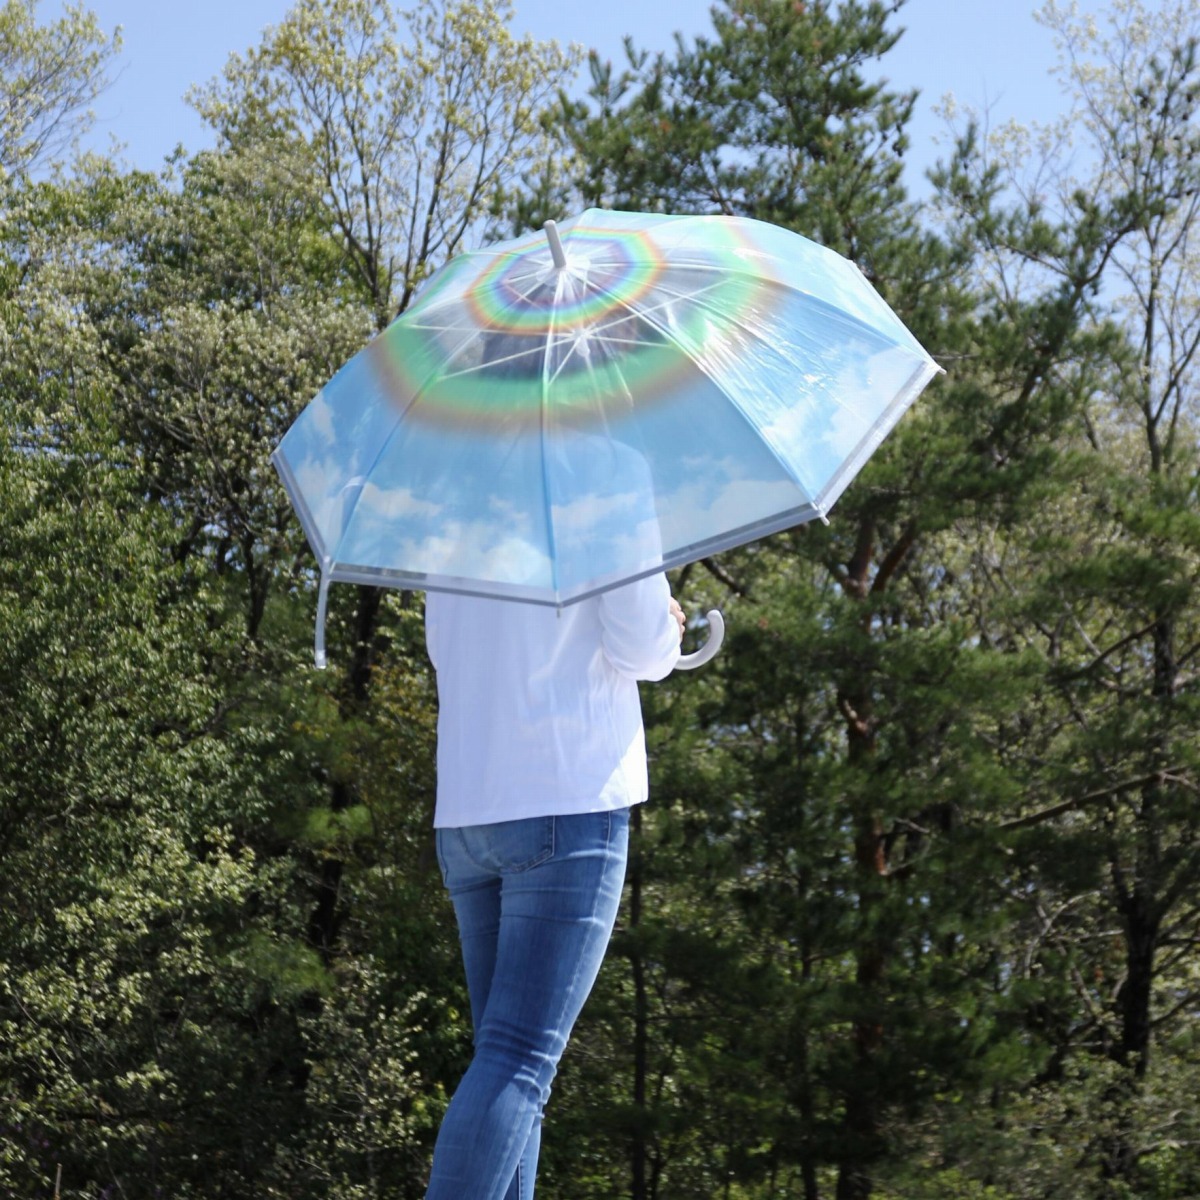 ハッピークリアアンブレラ レインボー 雨傘 かさ かわいい おしゃれ 雨対策 梅雨対策 通勤 通学 アウトドア(代引不可)